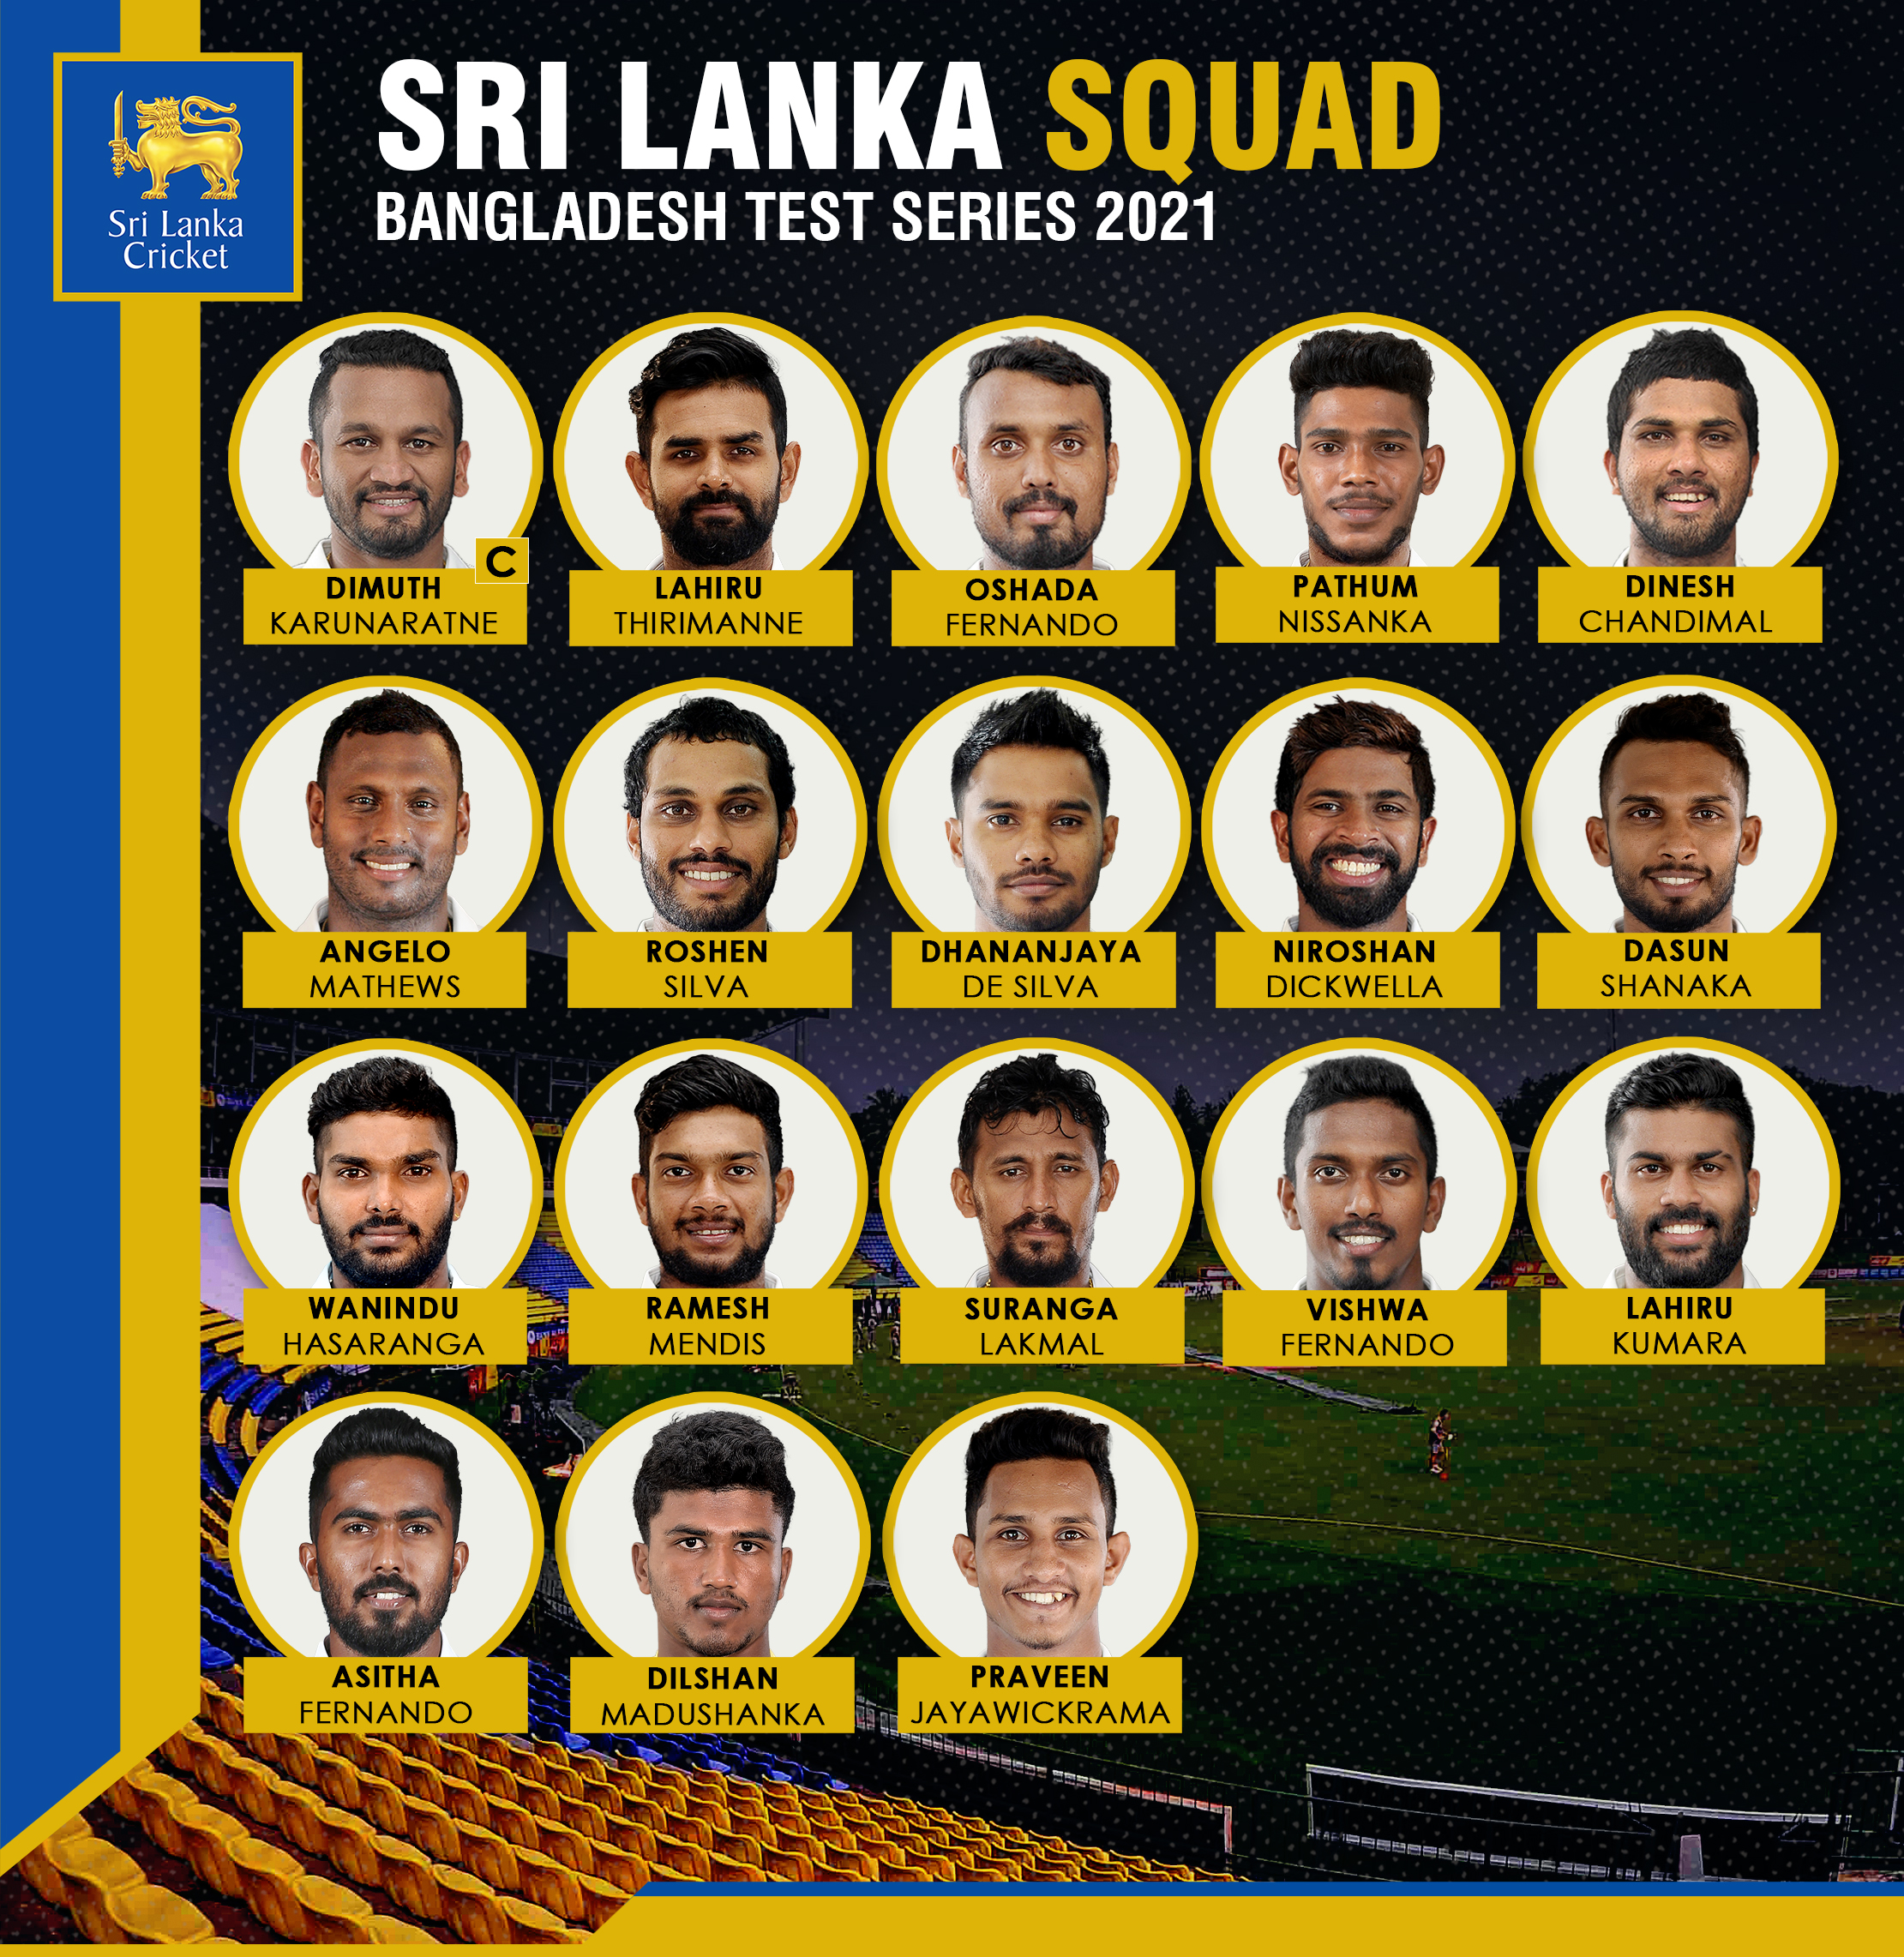 Sri Lanka squad for the 2-match Test series vs Bangladesh